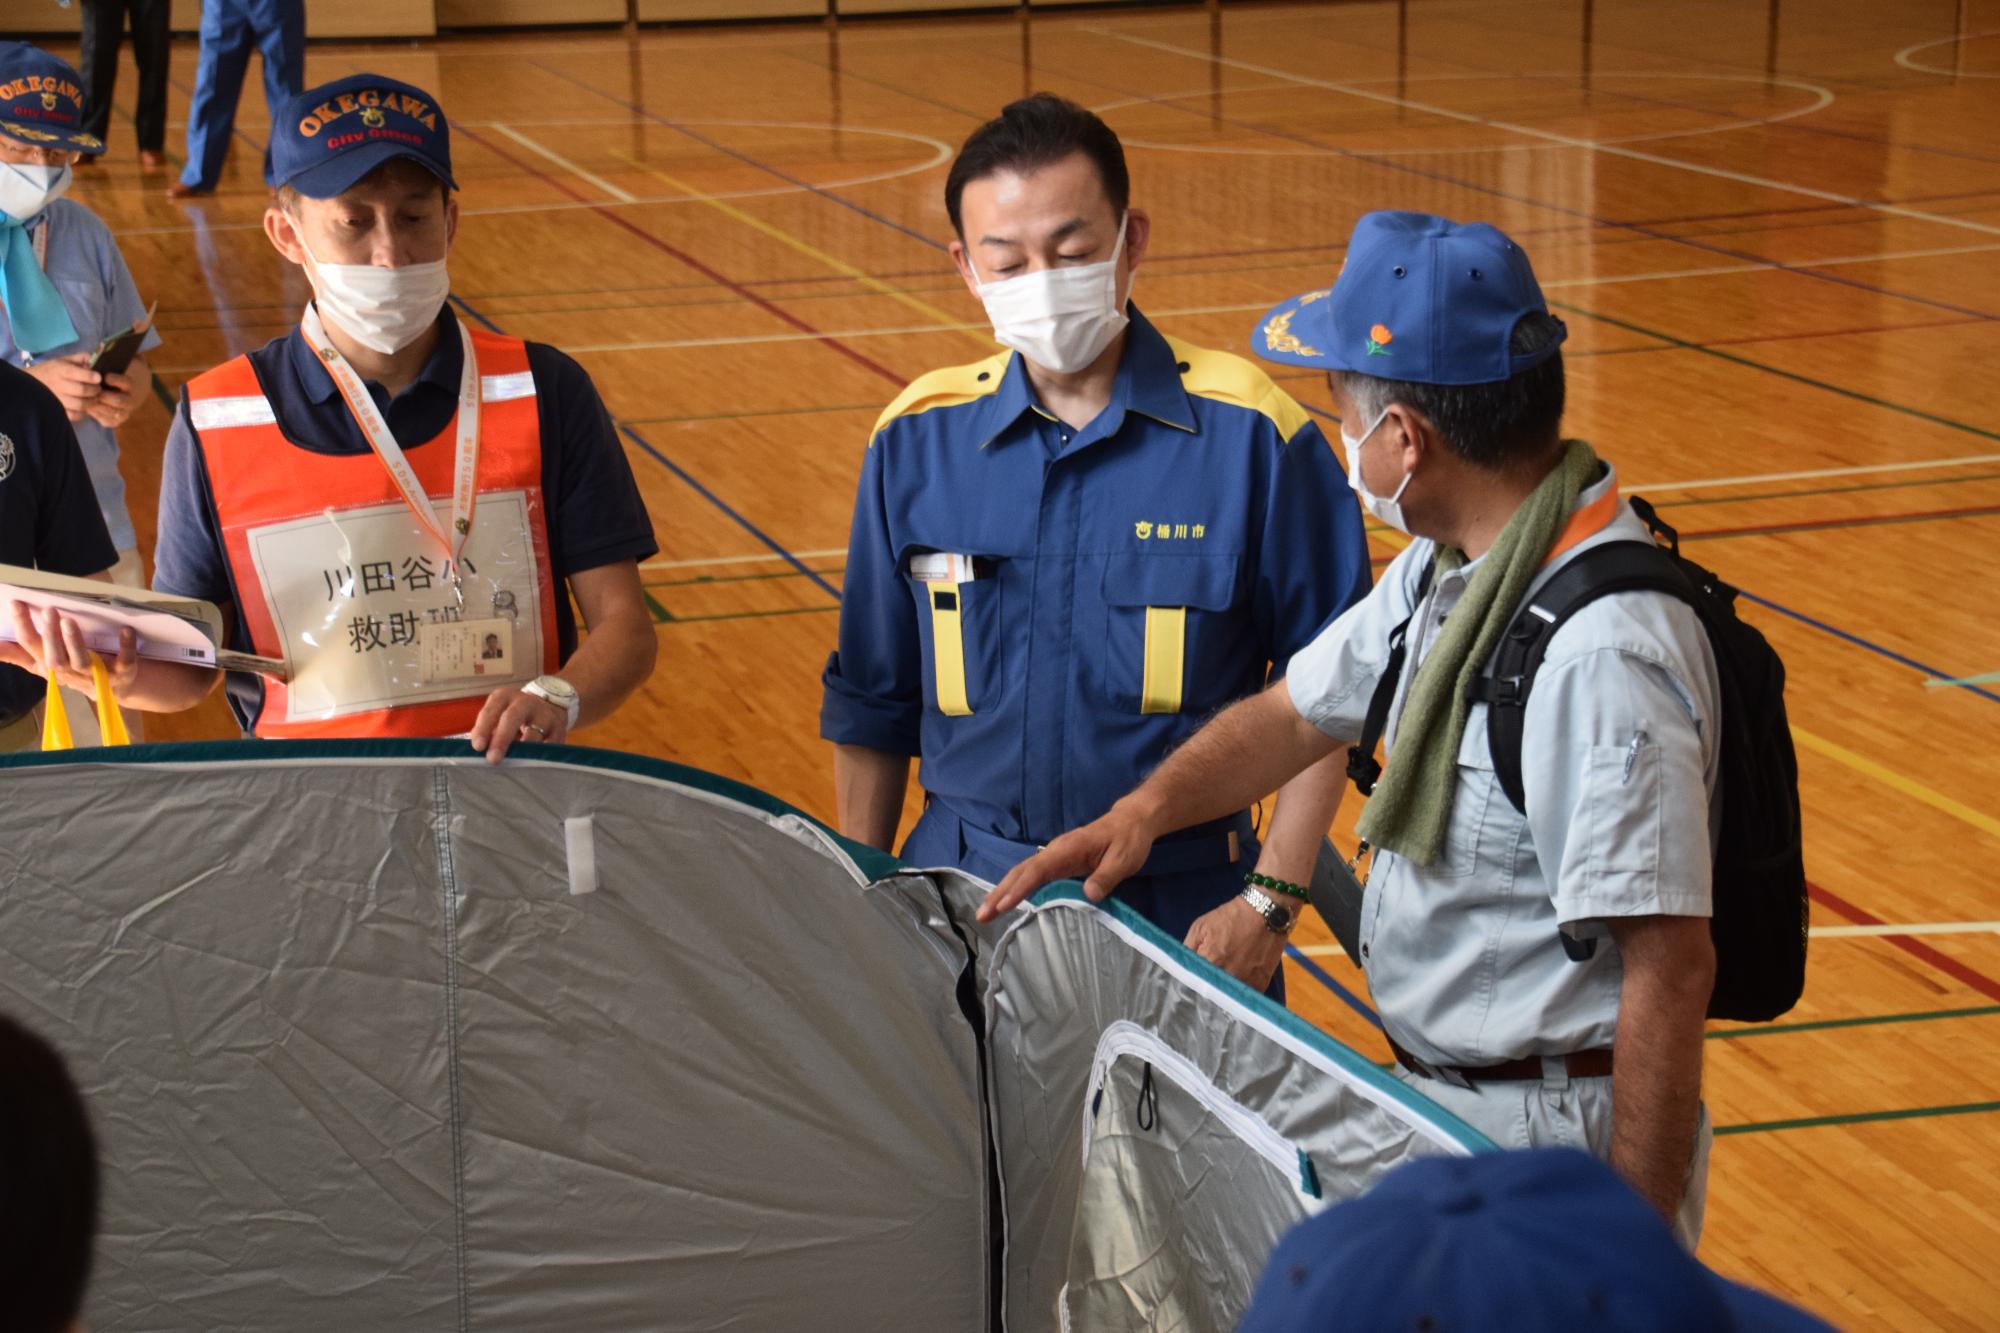 川田谷小学校で行われた「避難所開設訓練」での様子